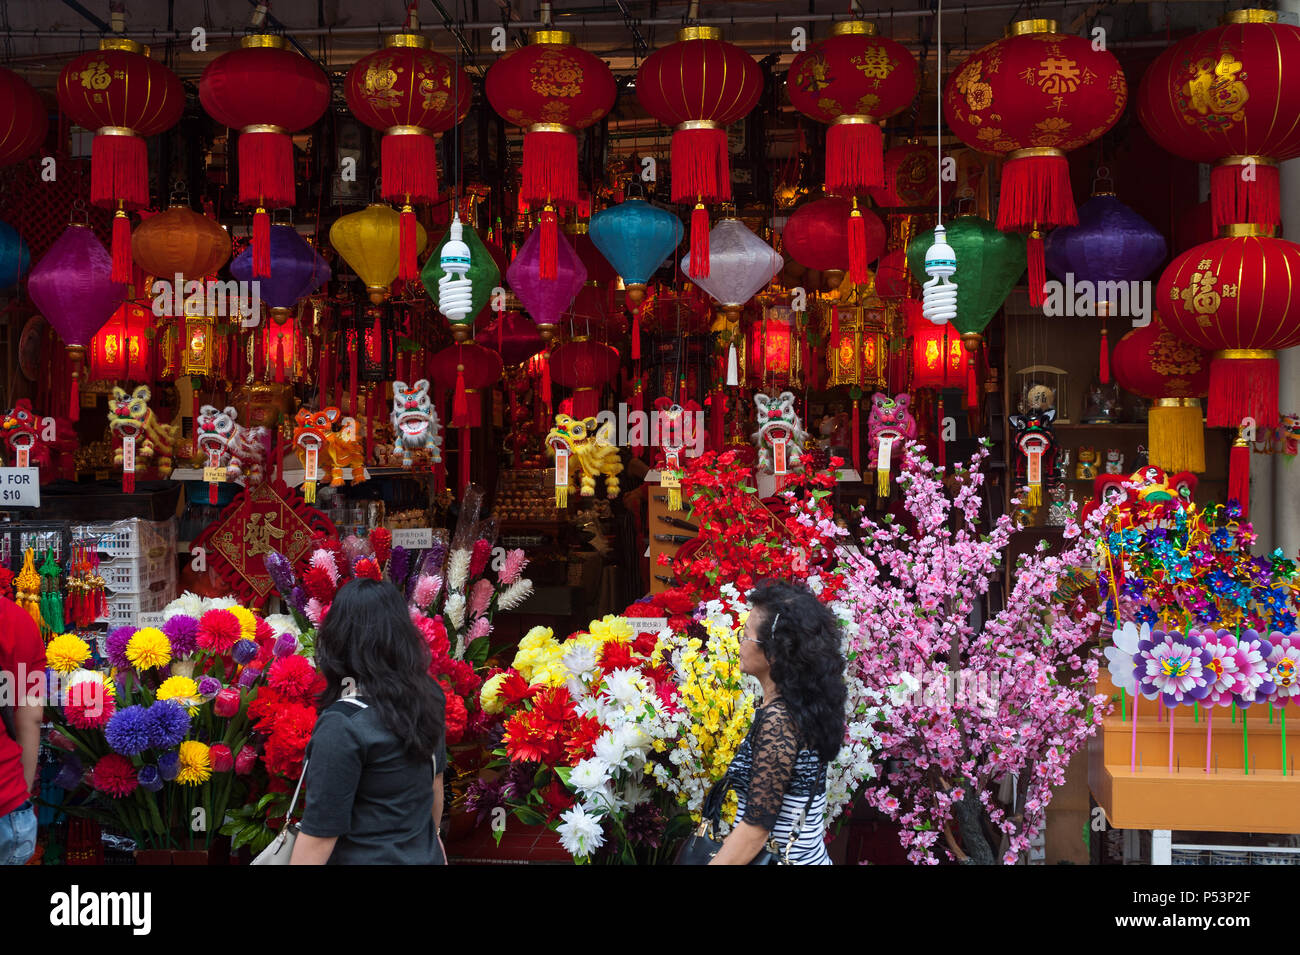 18.01.2018, Singapur, Singapur - ein Shop in Singapur Chinatown verkauft Chinesische Laternen, Kunststoff Blumen und andere dekorative Elemente für i Stockfoto